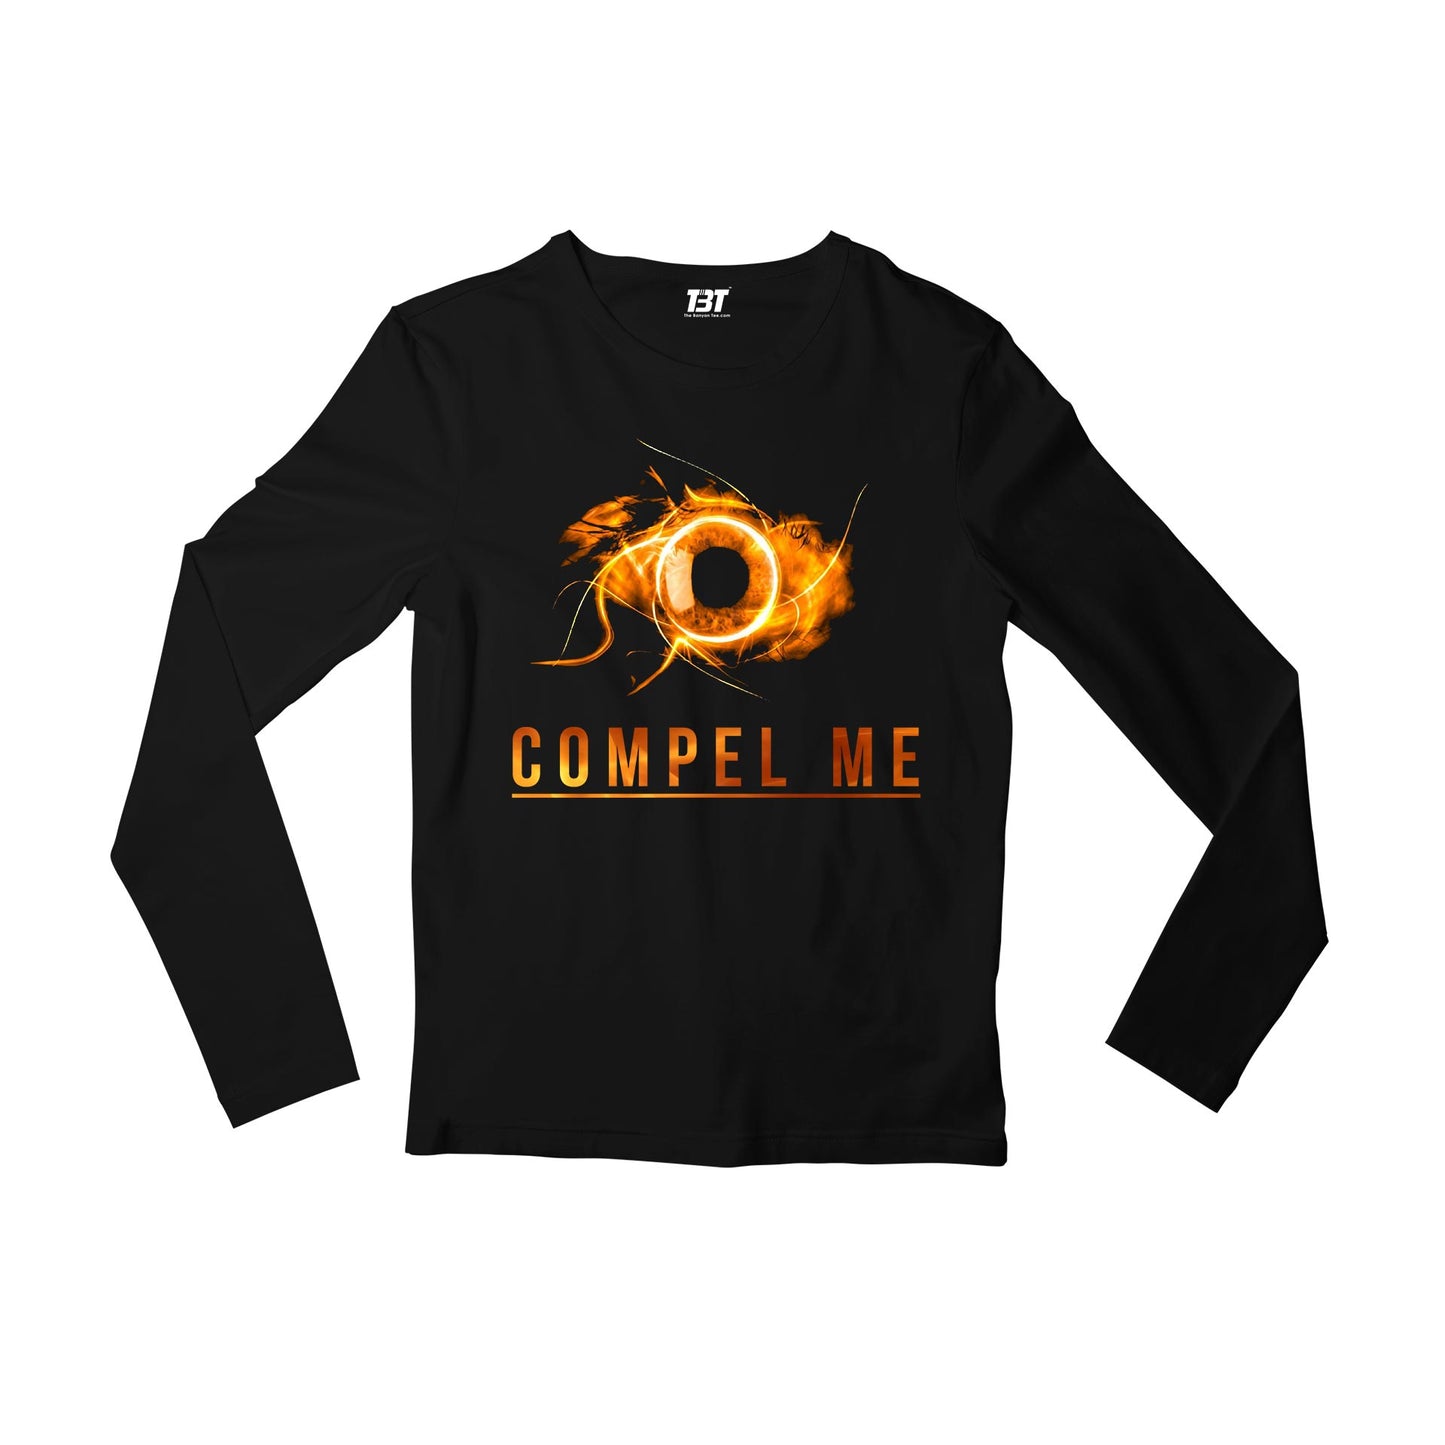 The Vampire Diaries Full Sleeves T-shirt - Compel Me Full Sleeves T-shirt The Banyan Tee TBT